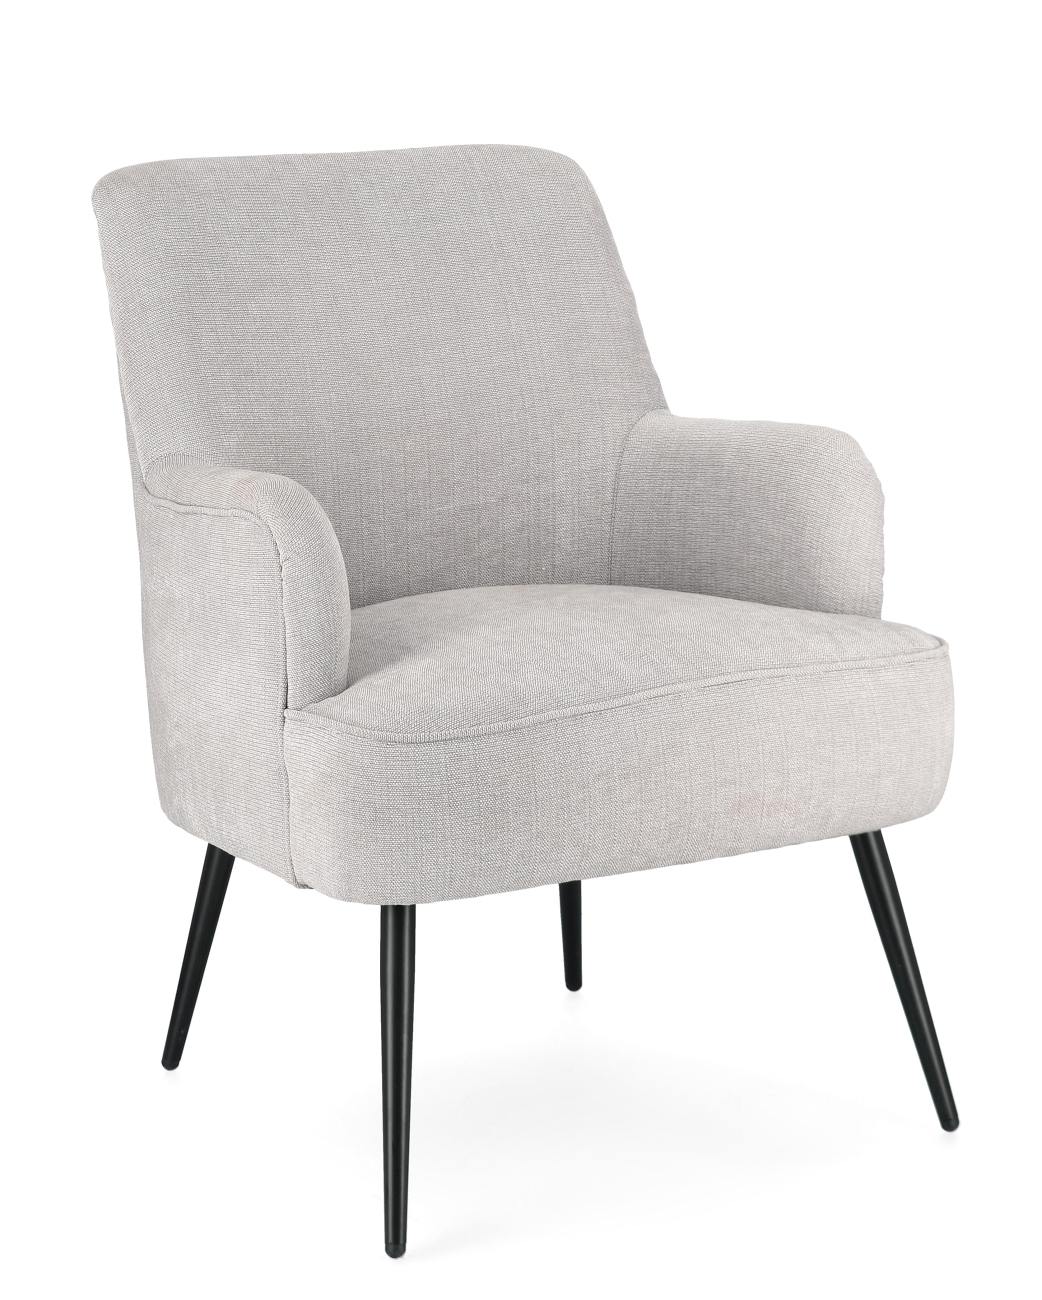 Der Sessel Ernestine überzeugt mit seinem modernen Stil. Gefertigt wurde er aus einem Stoff-Bezug, welcher einen hellgrauen Farbton besitzt. Das Gestell ist aus Metall und hat eine schwarze Farbe. Der Sessel verfügt über eine Armlehne.